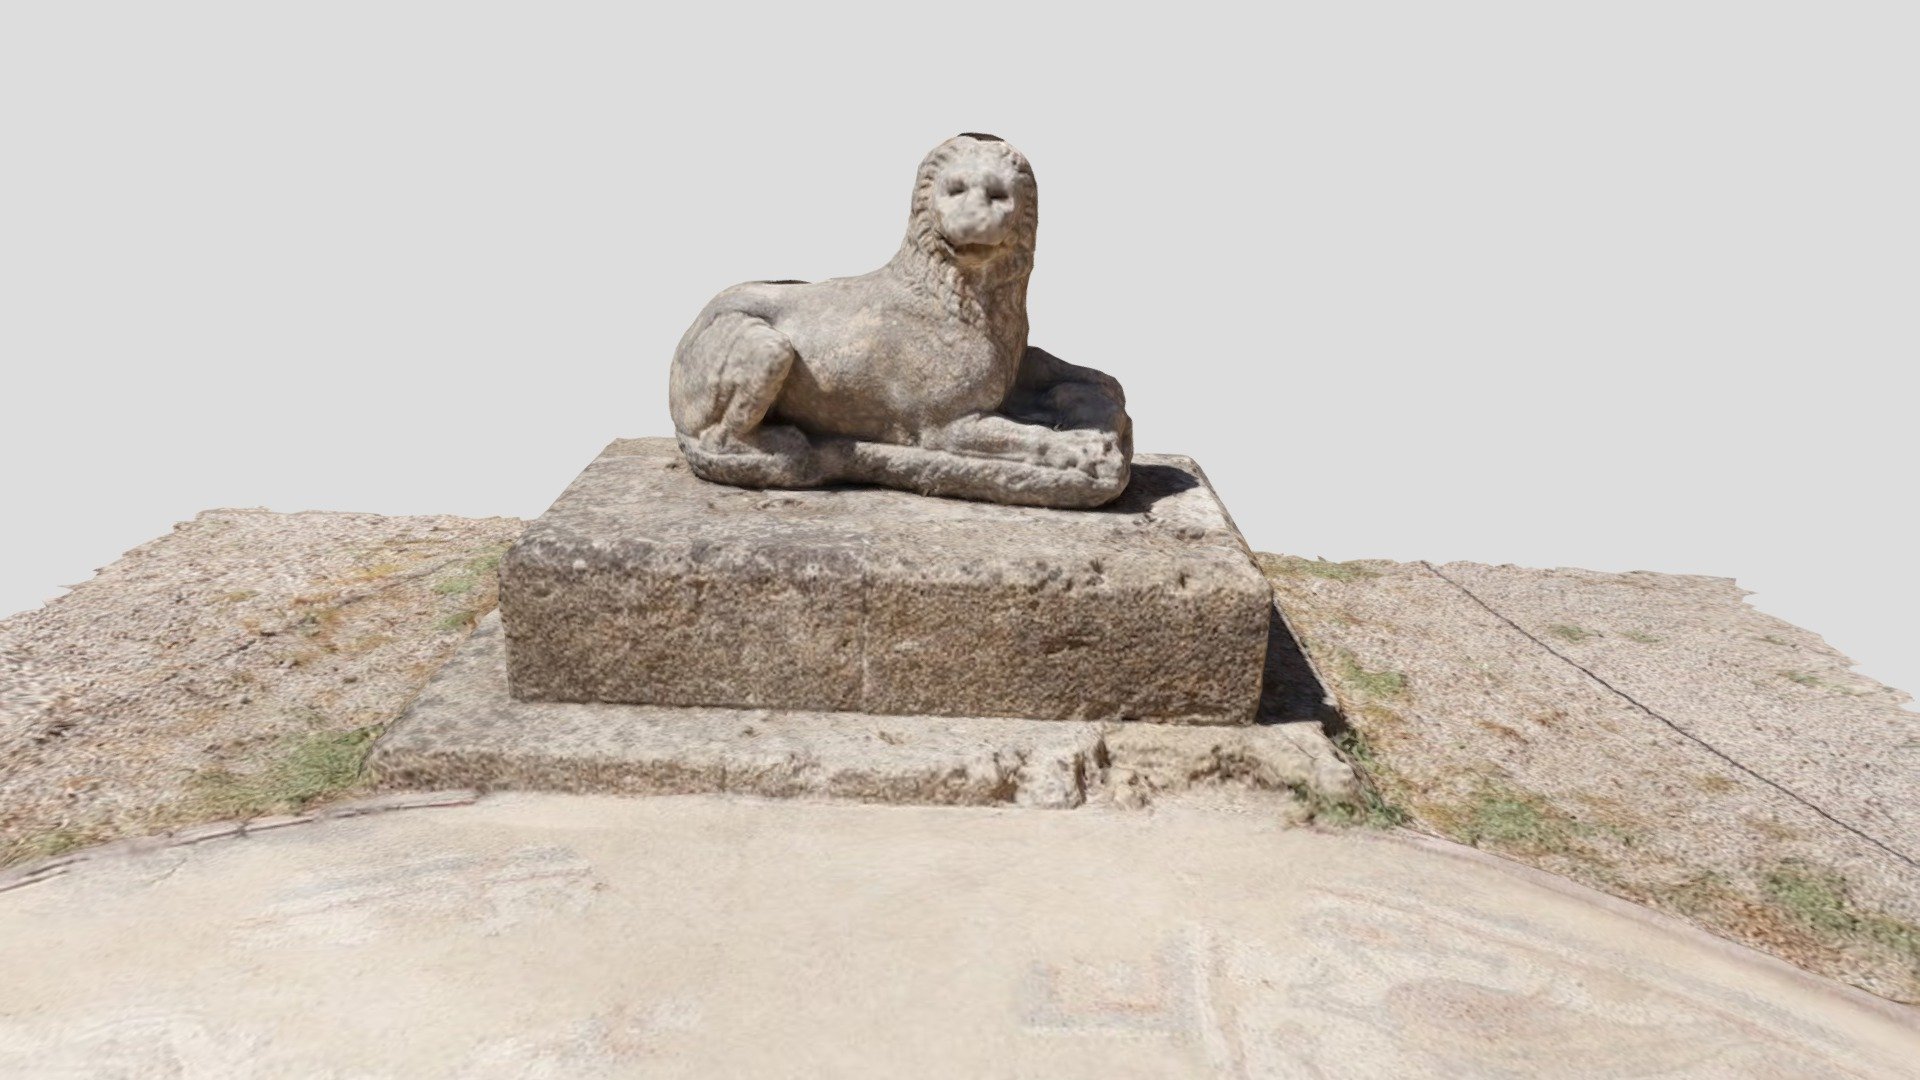 Hellenistic Stone Lion, Rhodos - 3D model by patrickla [8208d2d ...